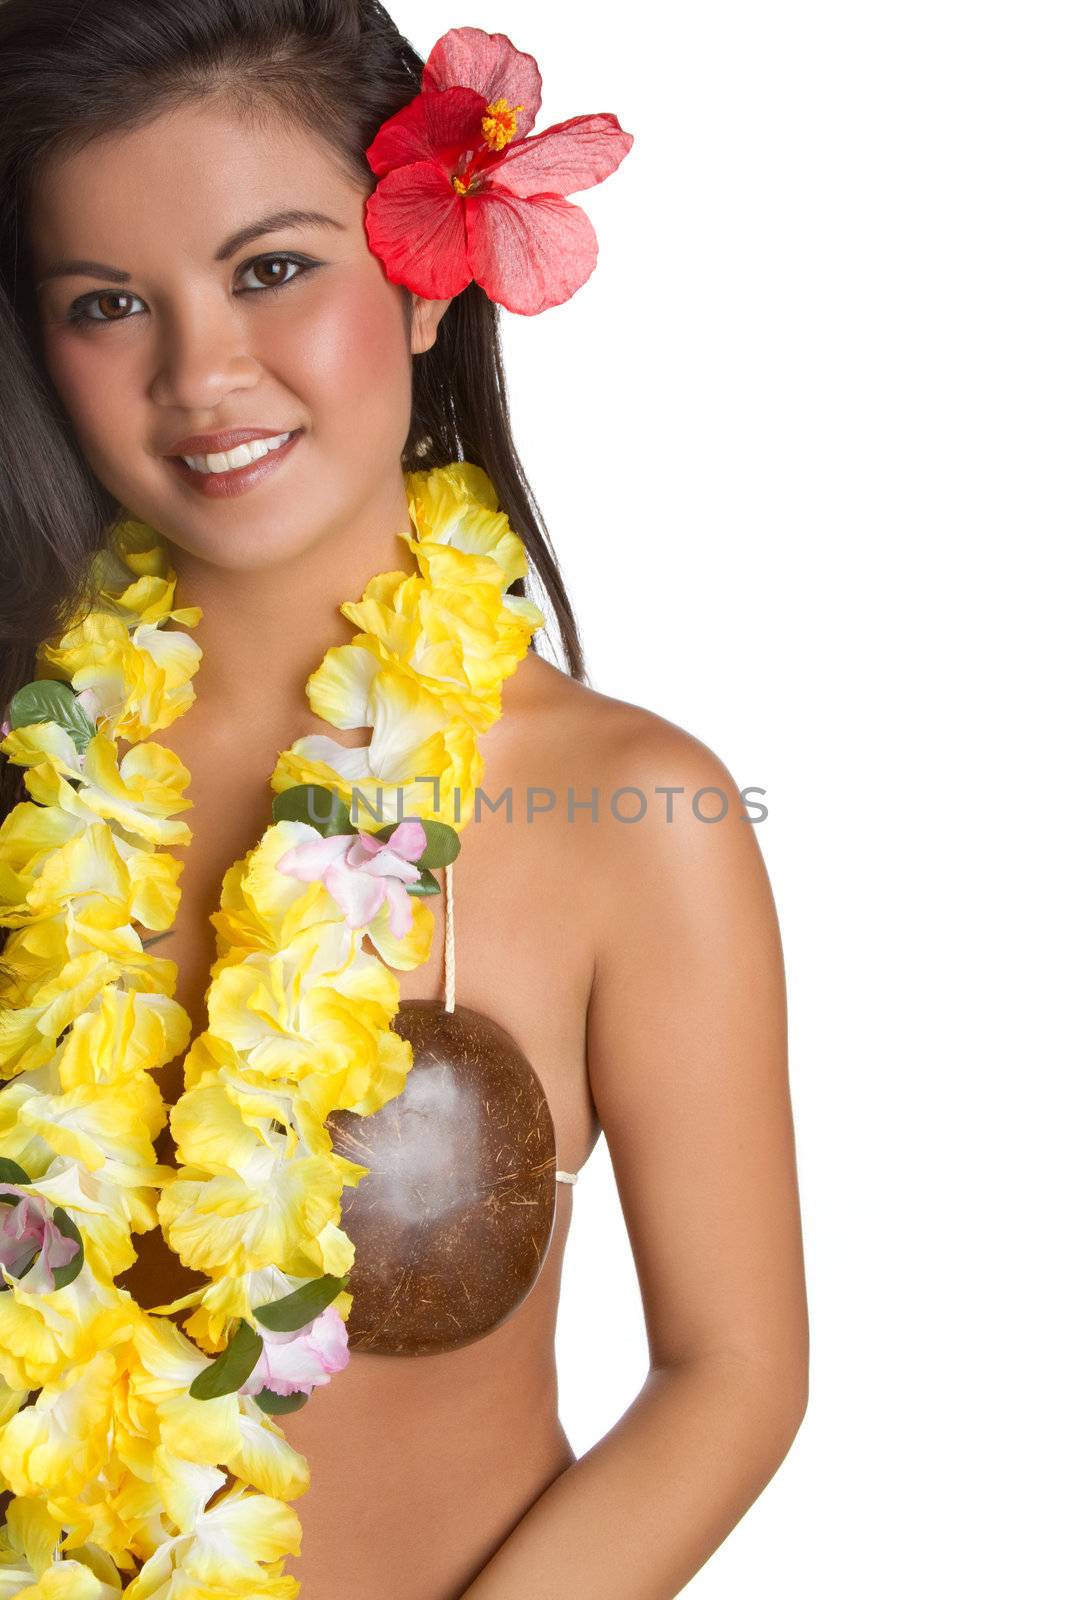 Hawaiian Tropical Woman by keeweeboy